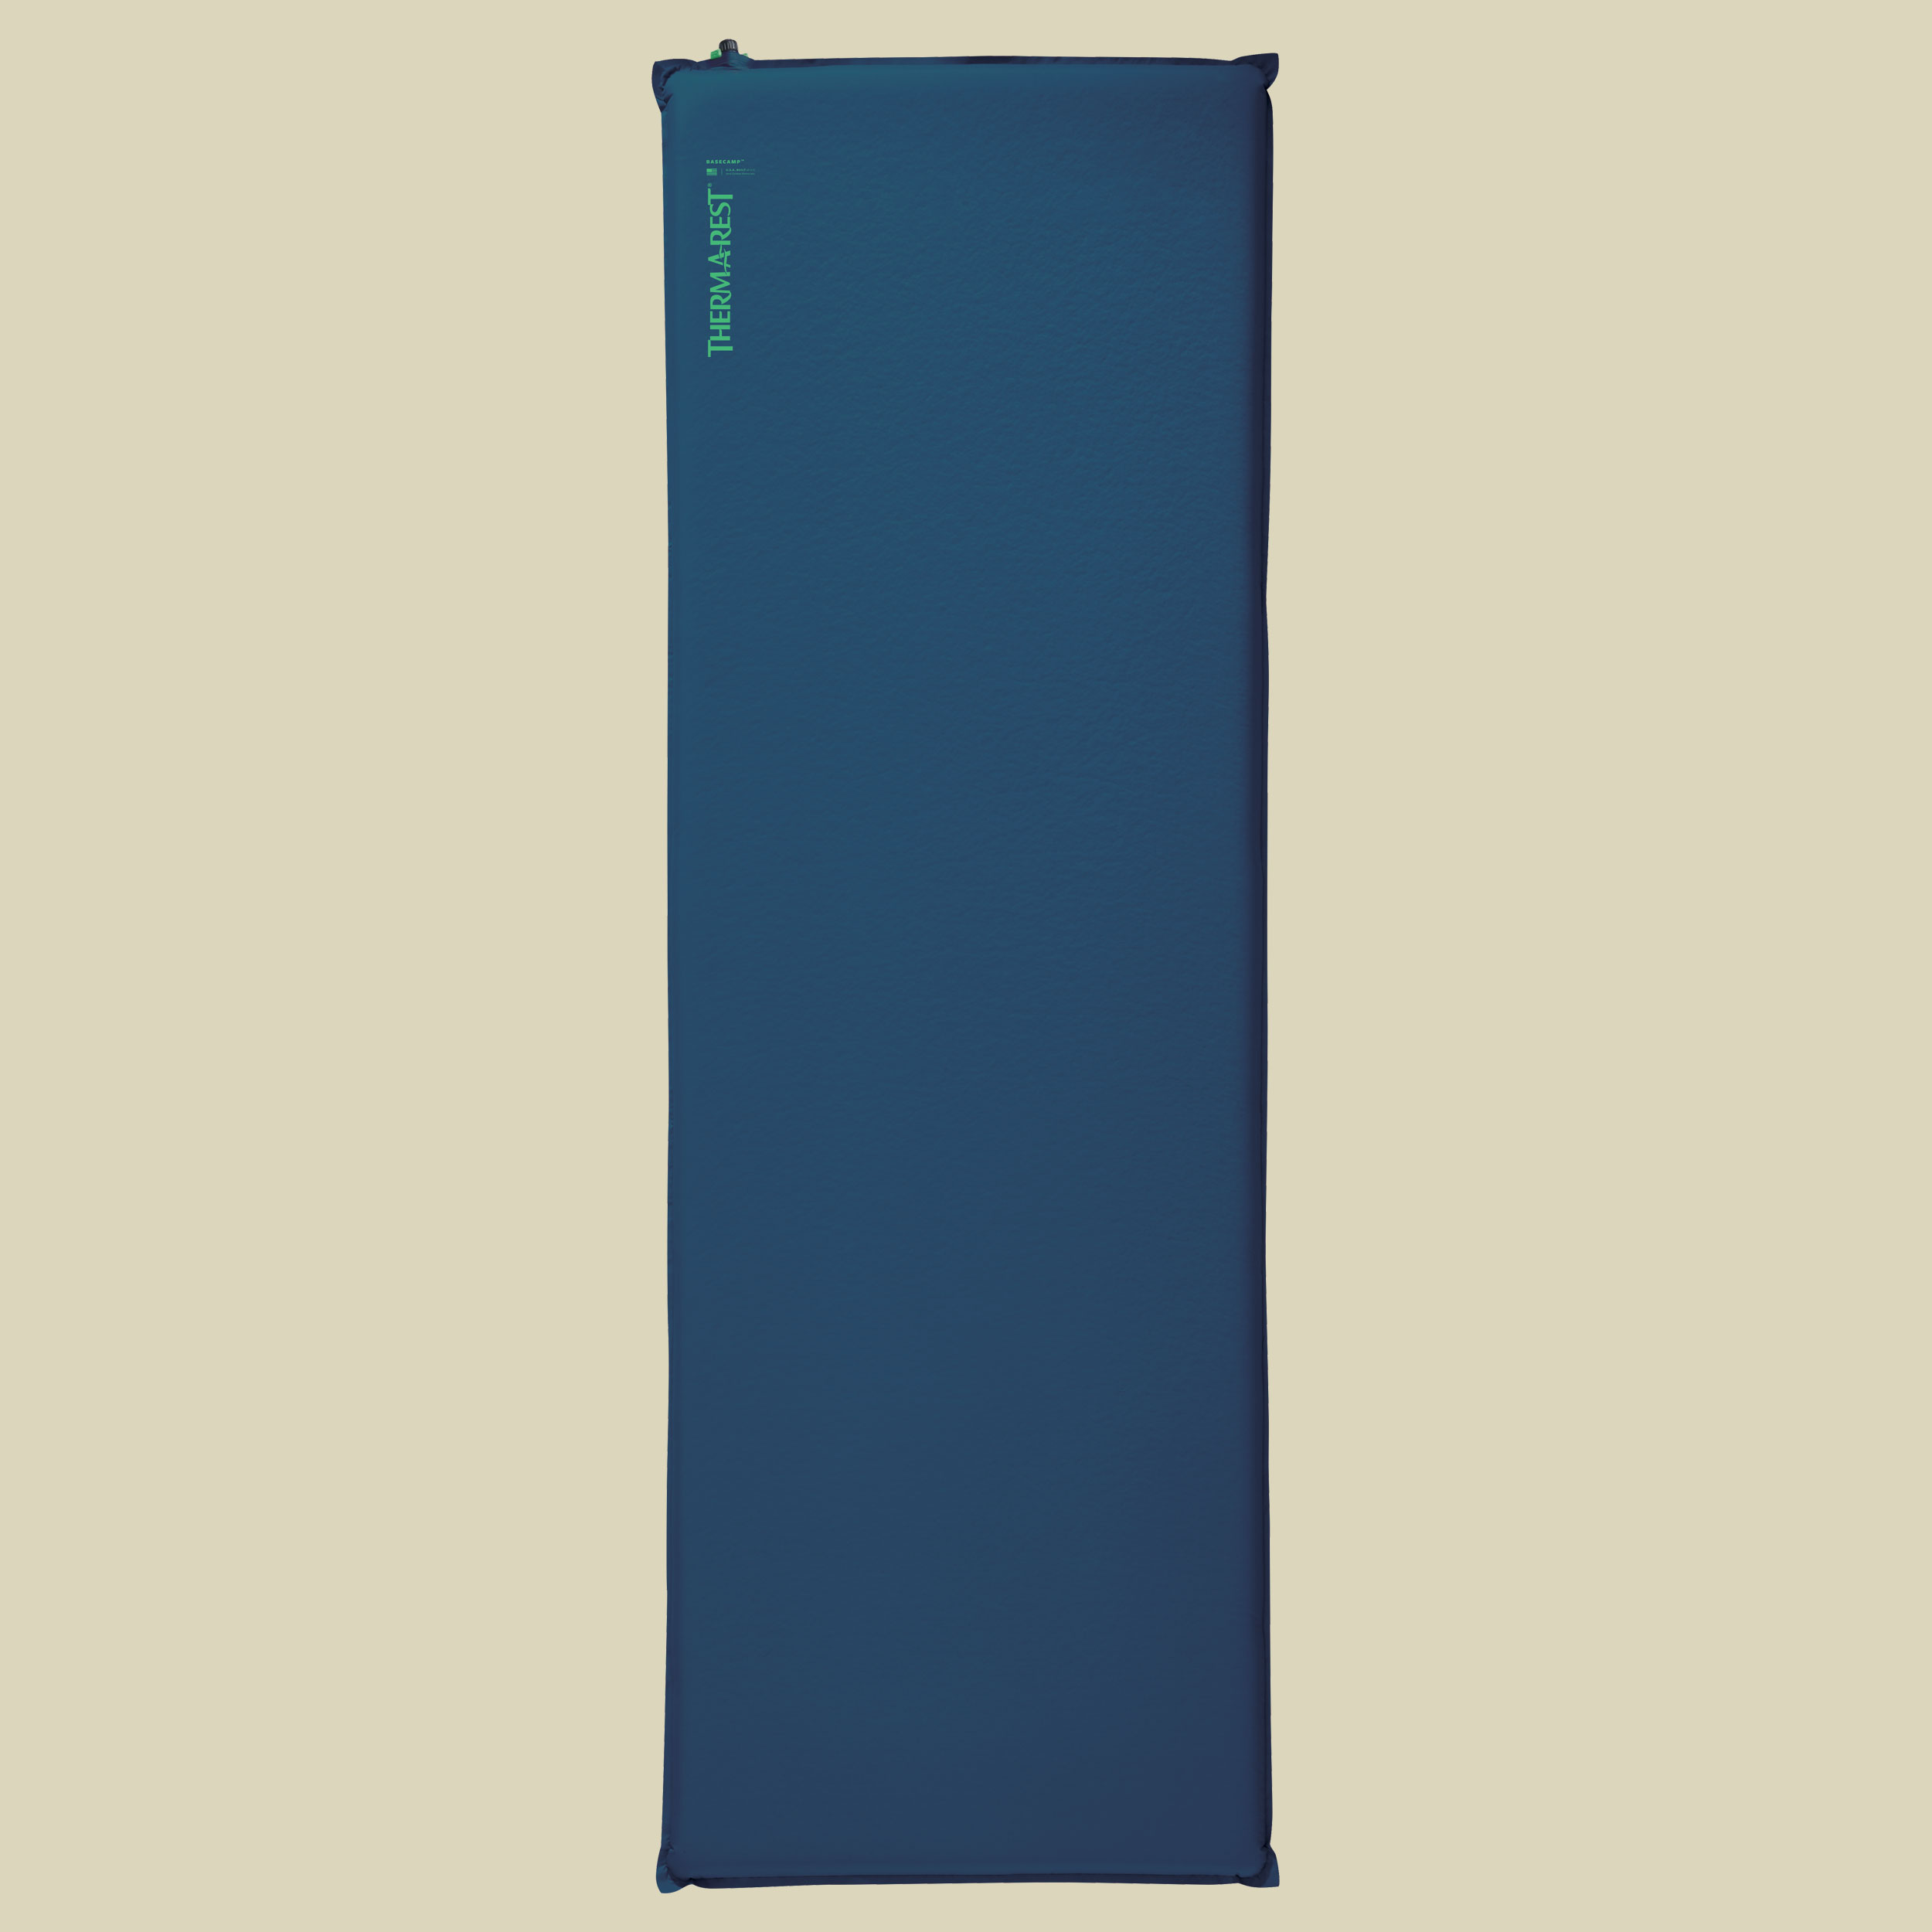 BaseCamp Liegefläche 196 x 76 cm (XL) Farbe poseidon blue